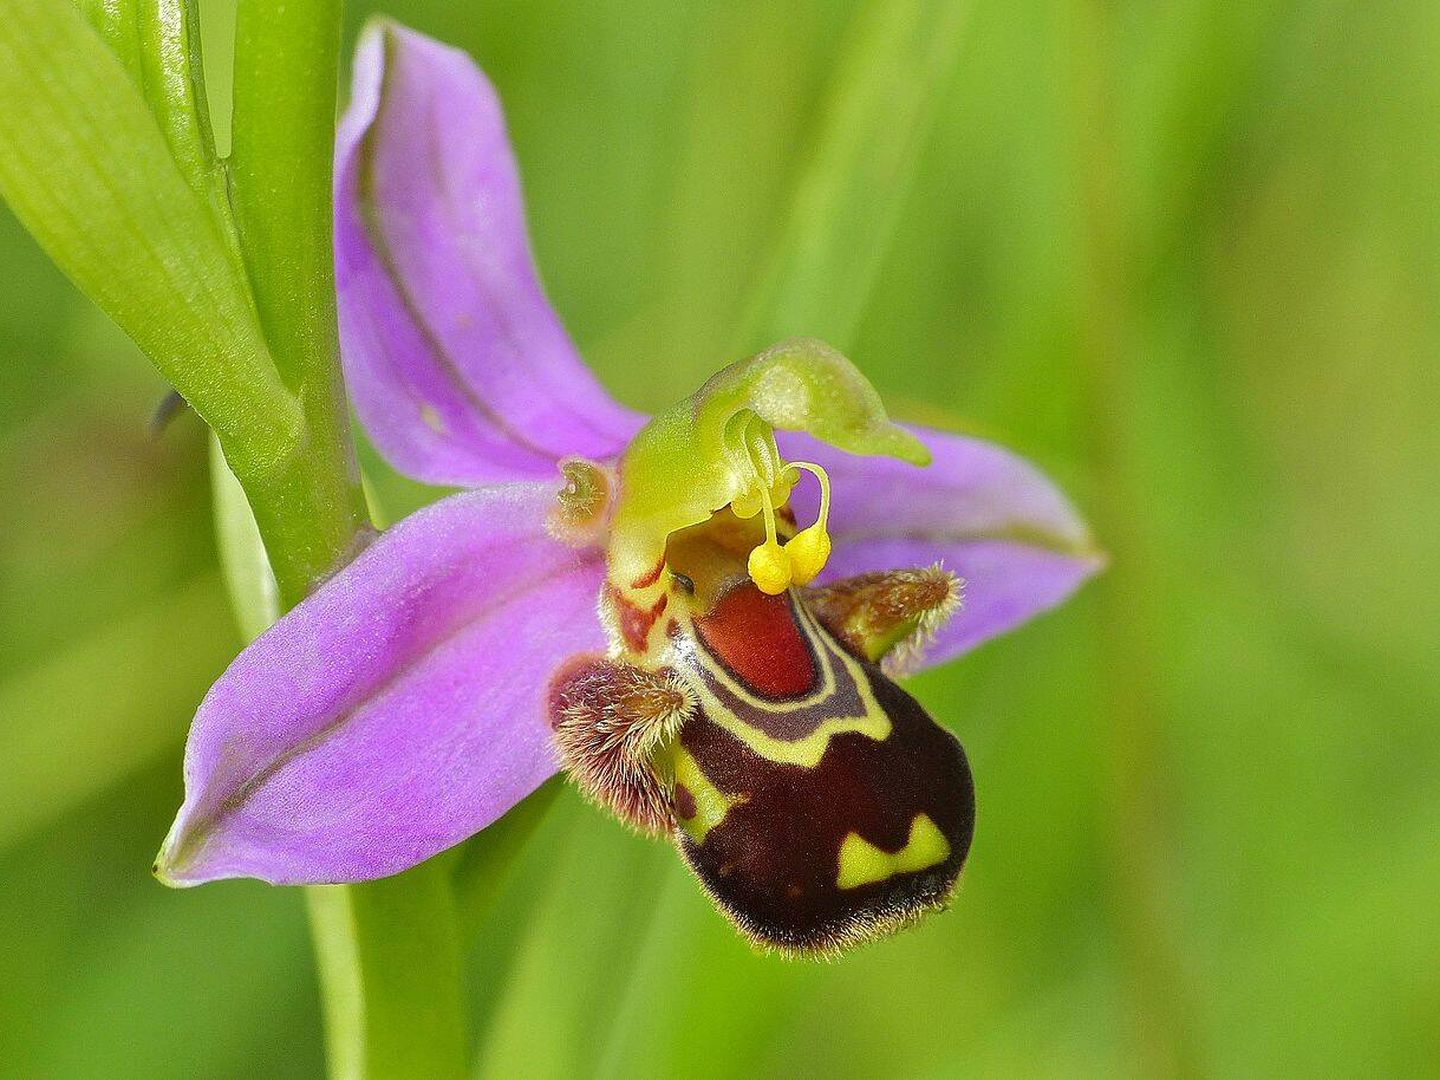 Esta orquídea emula una abeja para atraer a los machos y mejorar la polinización (Wikimedia).